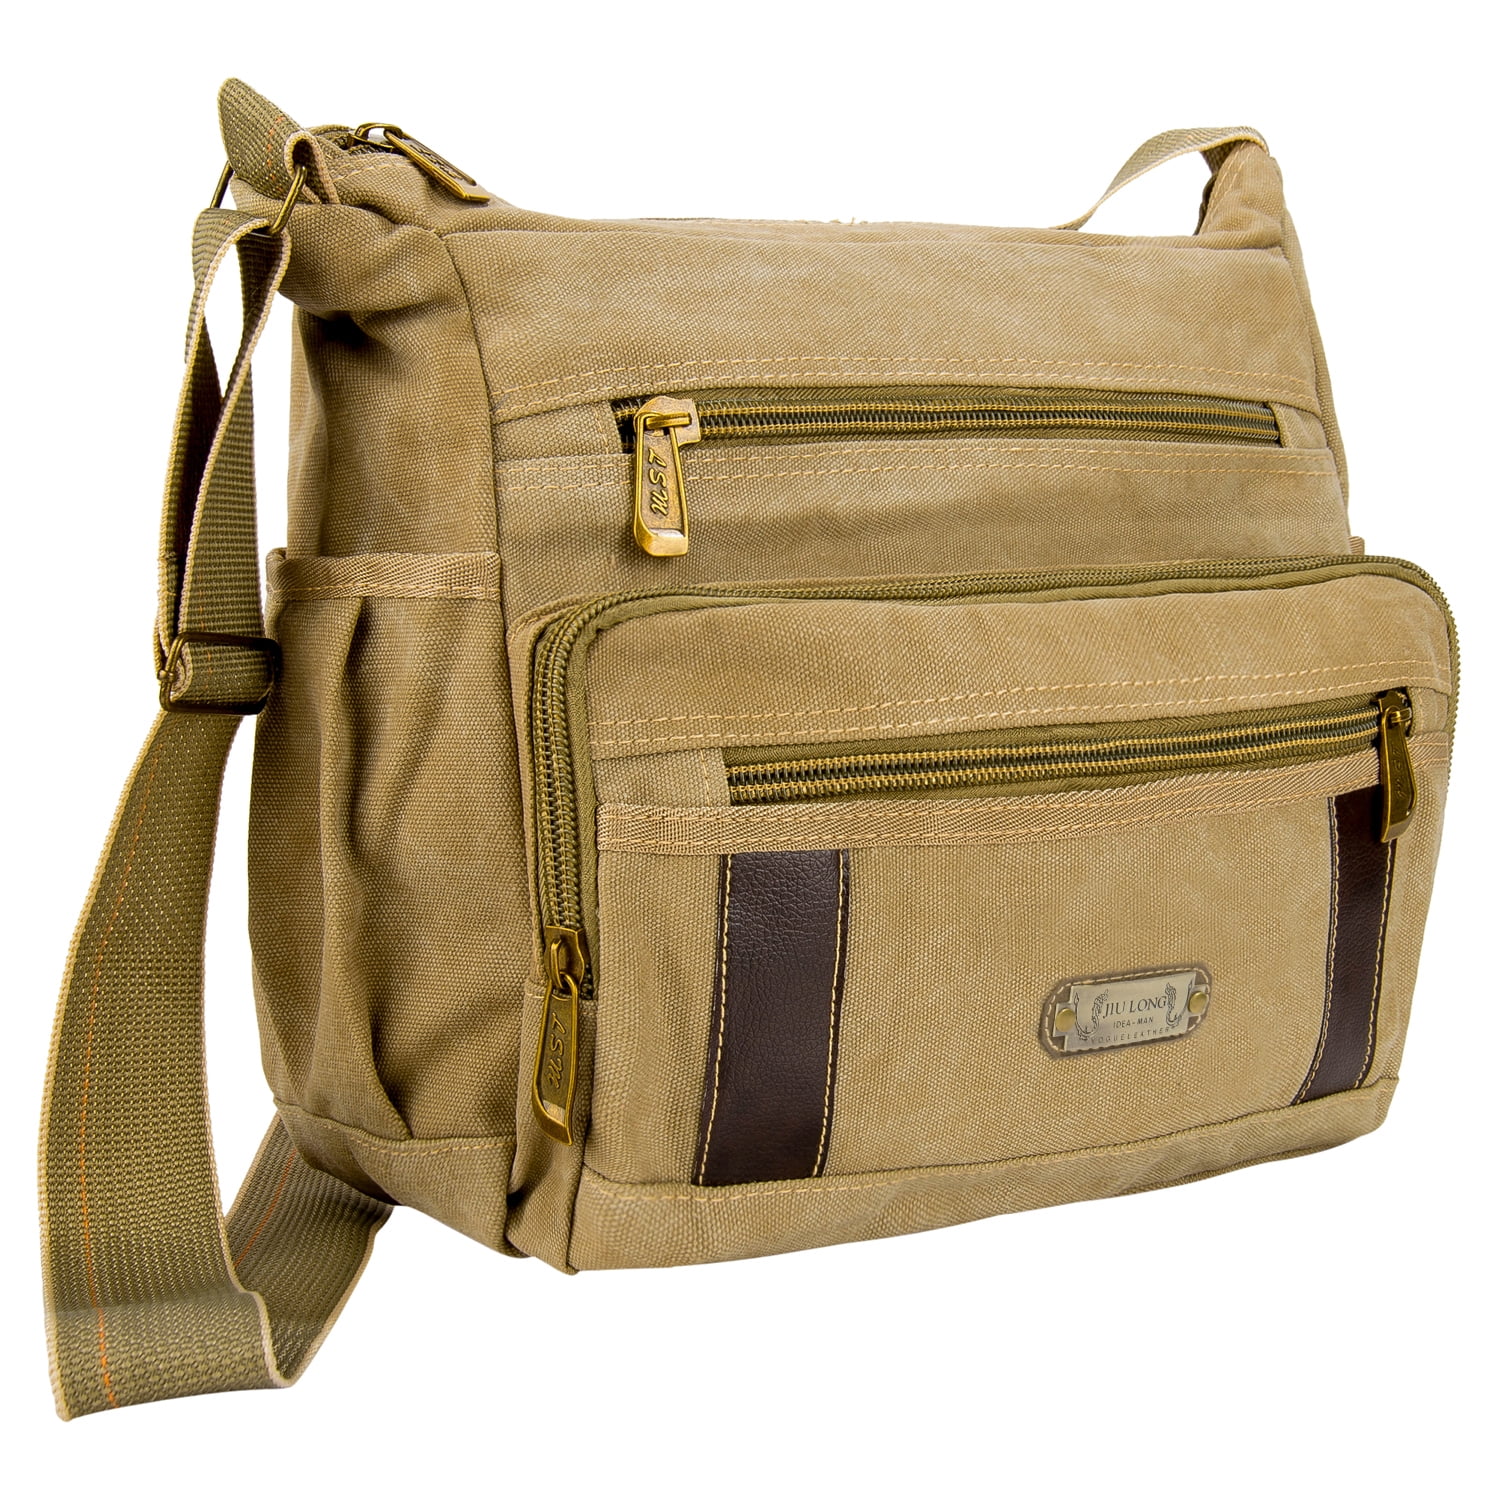 Epushow Cute Cat Laptop Bag 13 Inch Shoulder Strap Messenger Bag Computer Handbag Briefcase for Work and School